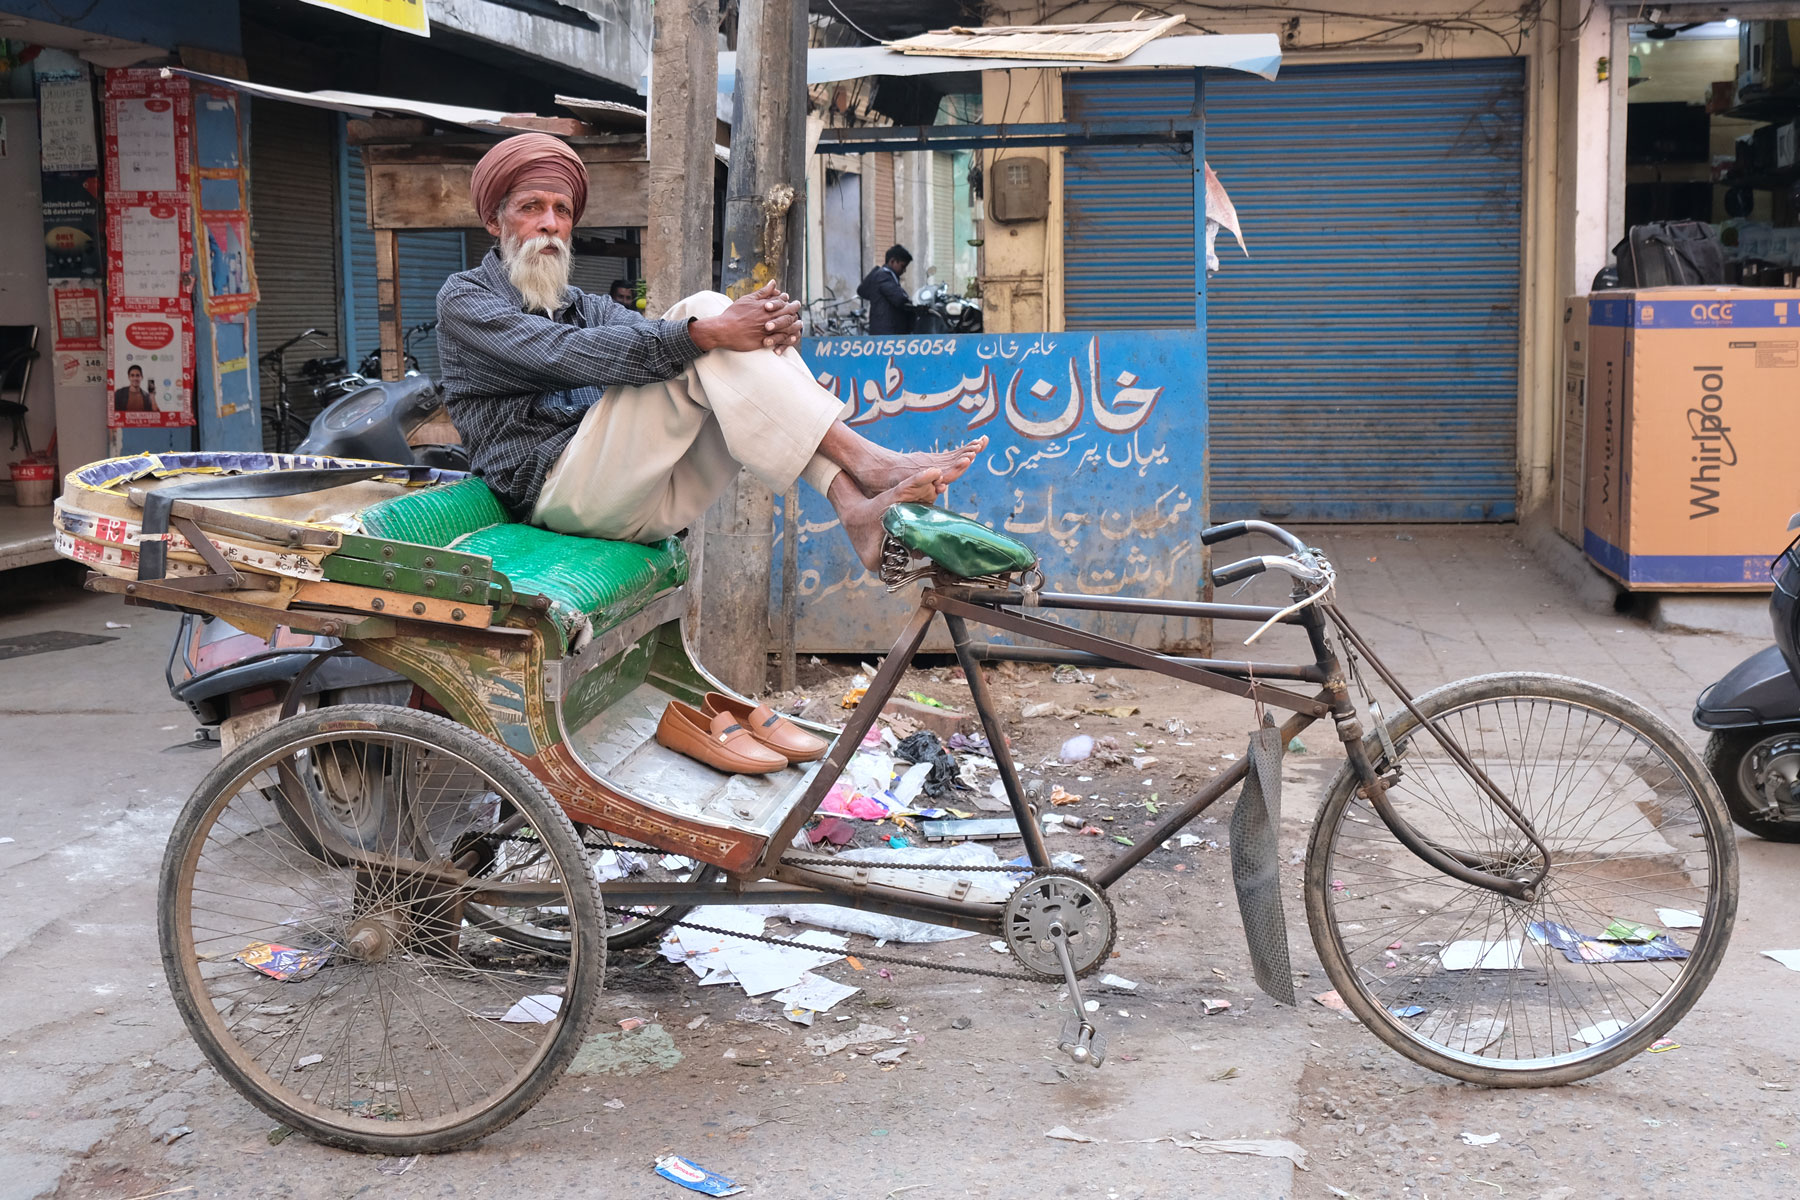 Ein indischer Mann sitzt auf einer Fahrradrikscha und stützt seine Füße auf dem Sattel ab.